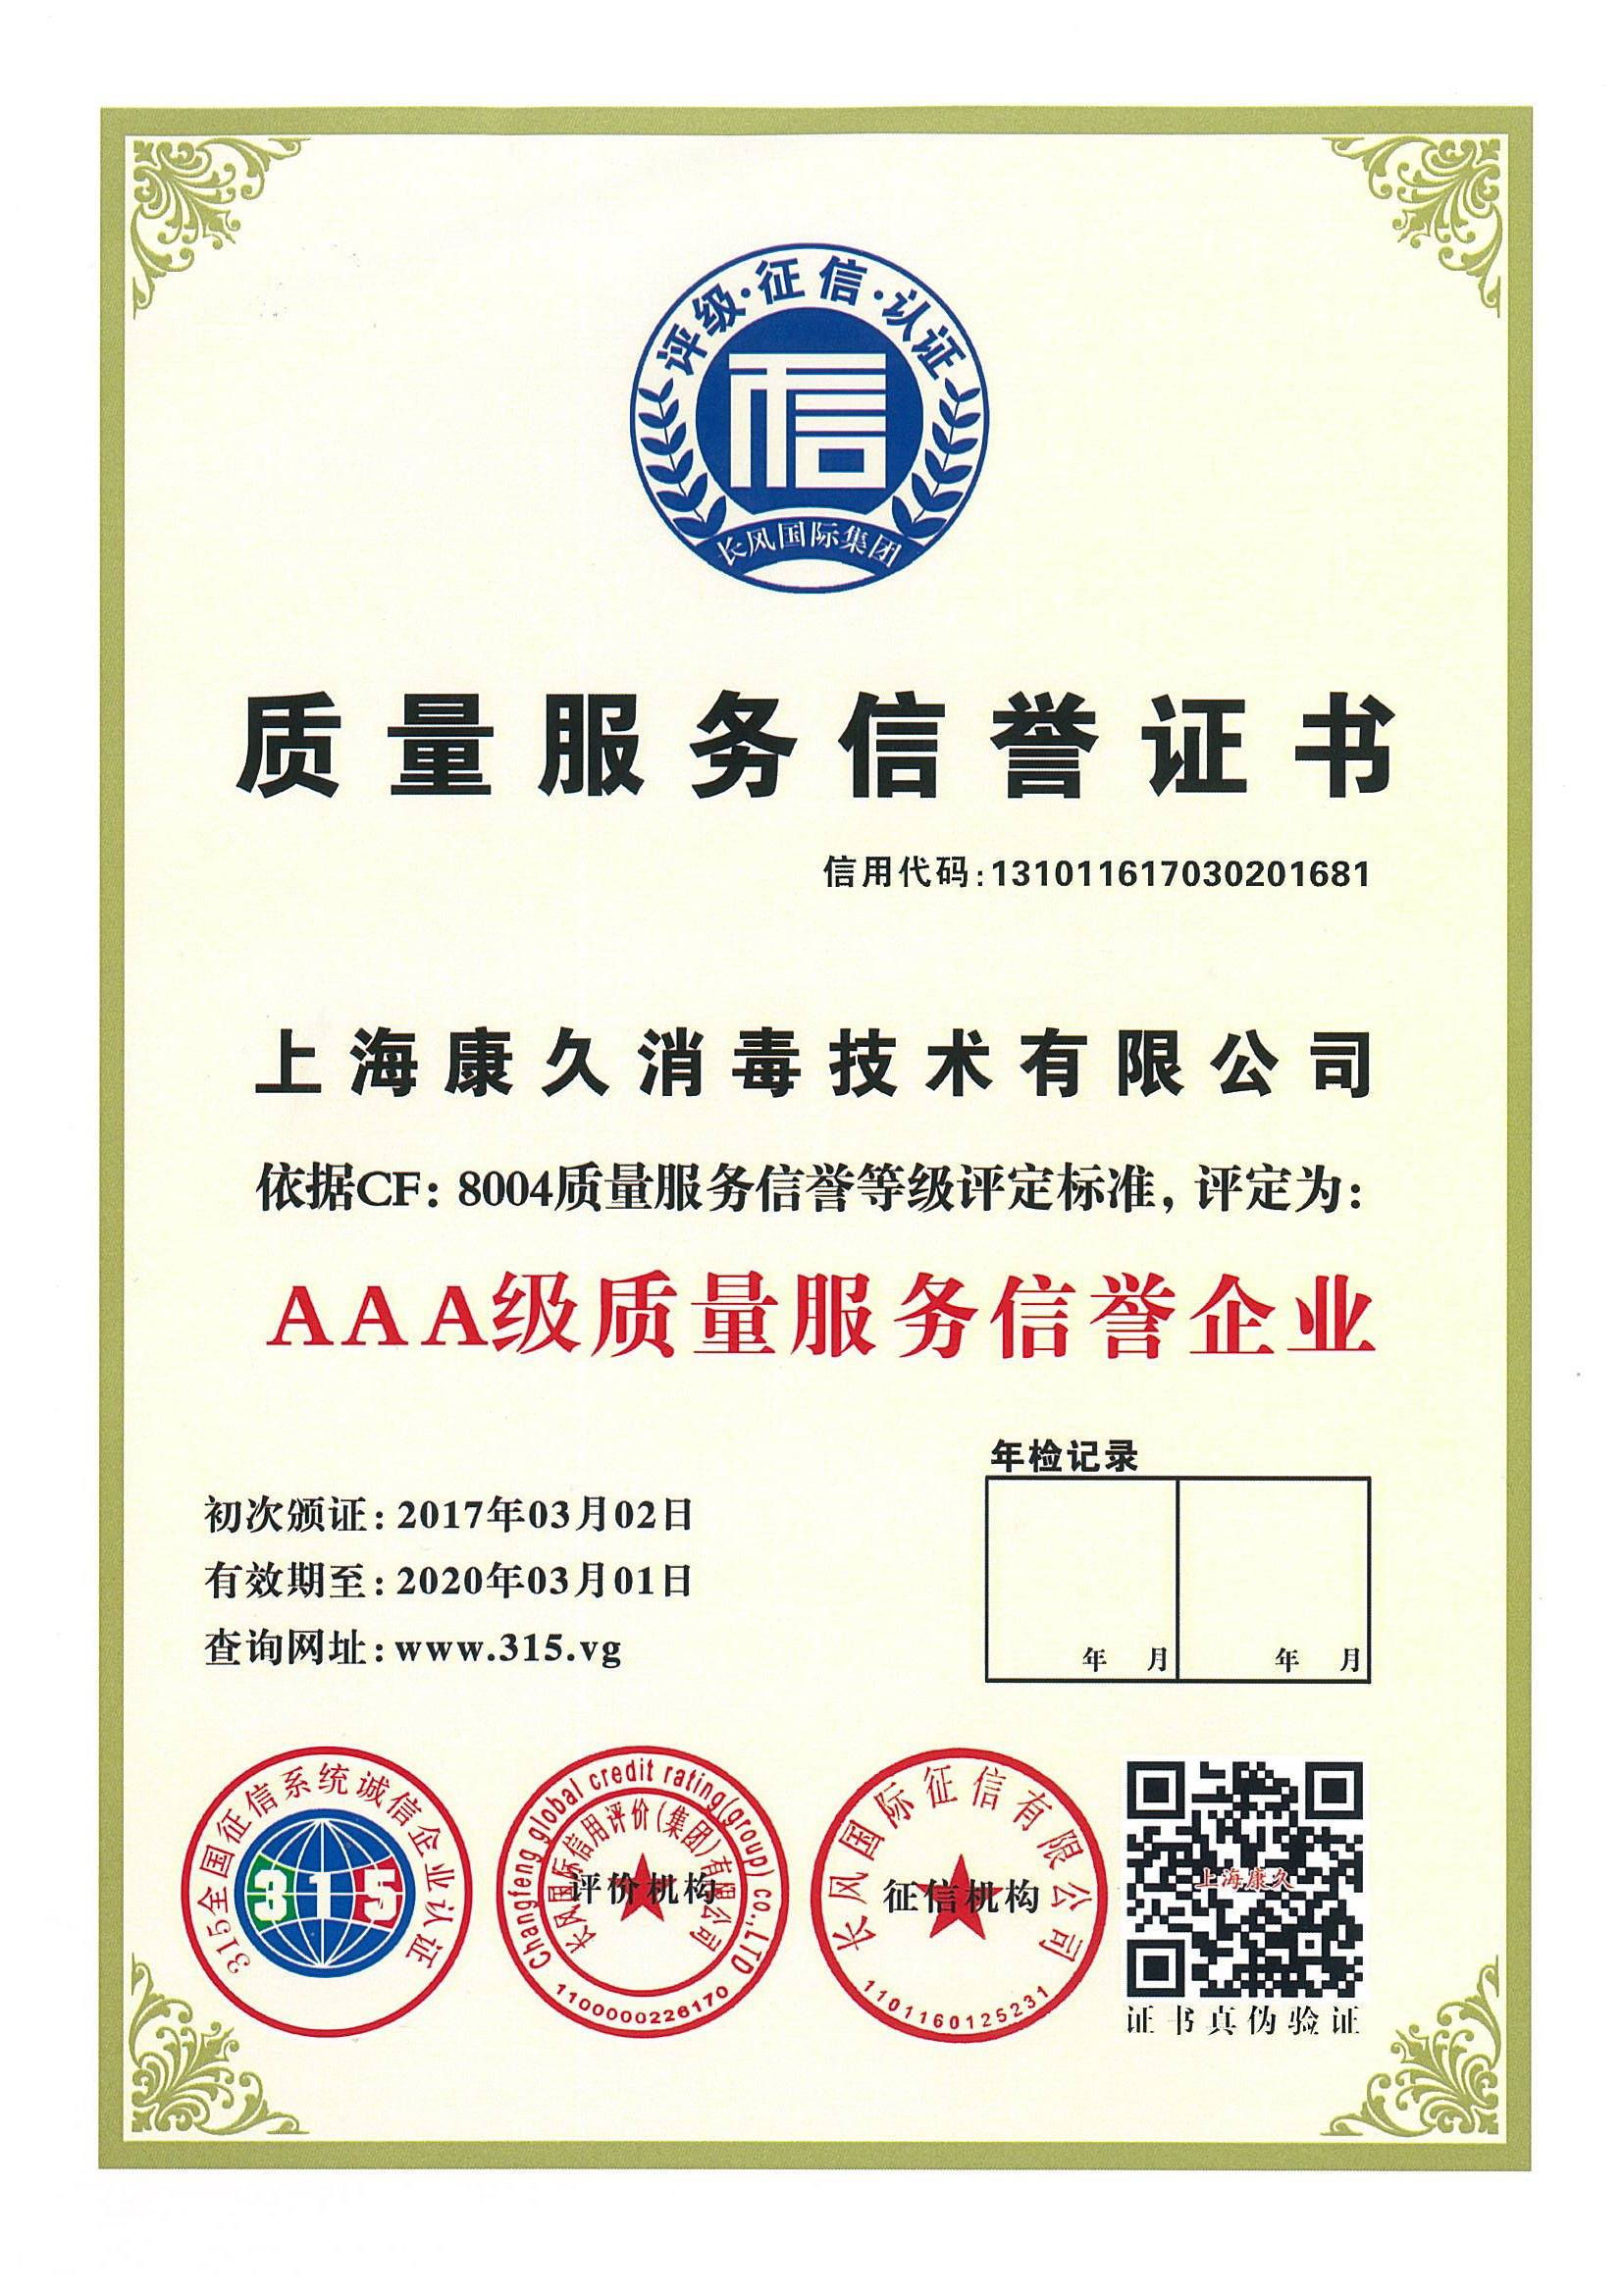 “红河质量服务信誉证书